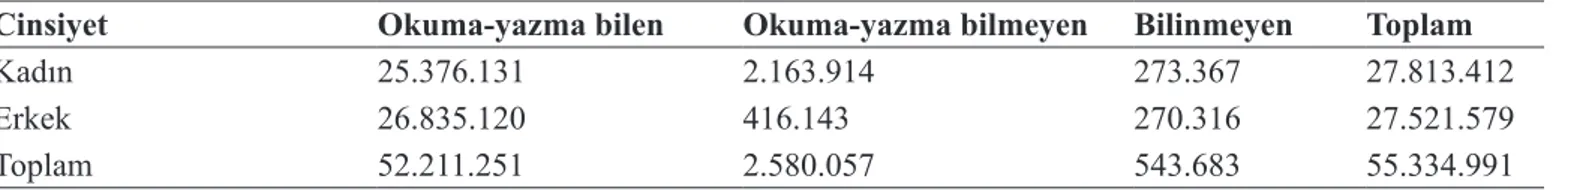 Tablo 1. Türkiye nüfusunun okuryazarlık durumu